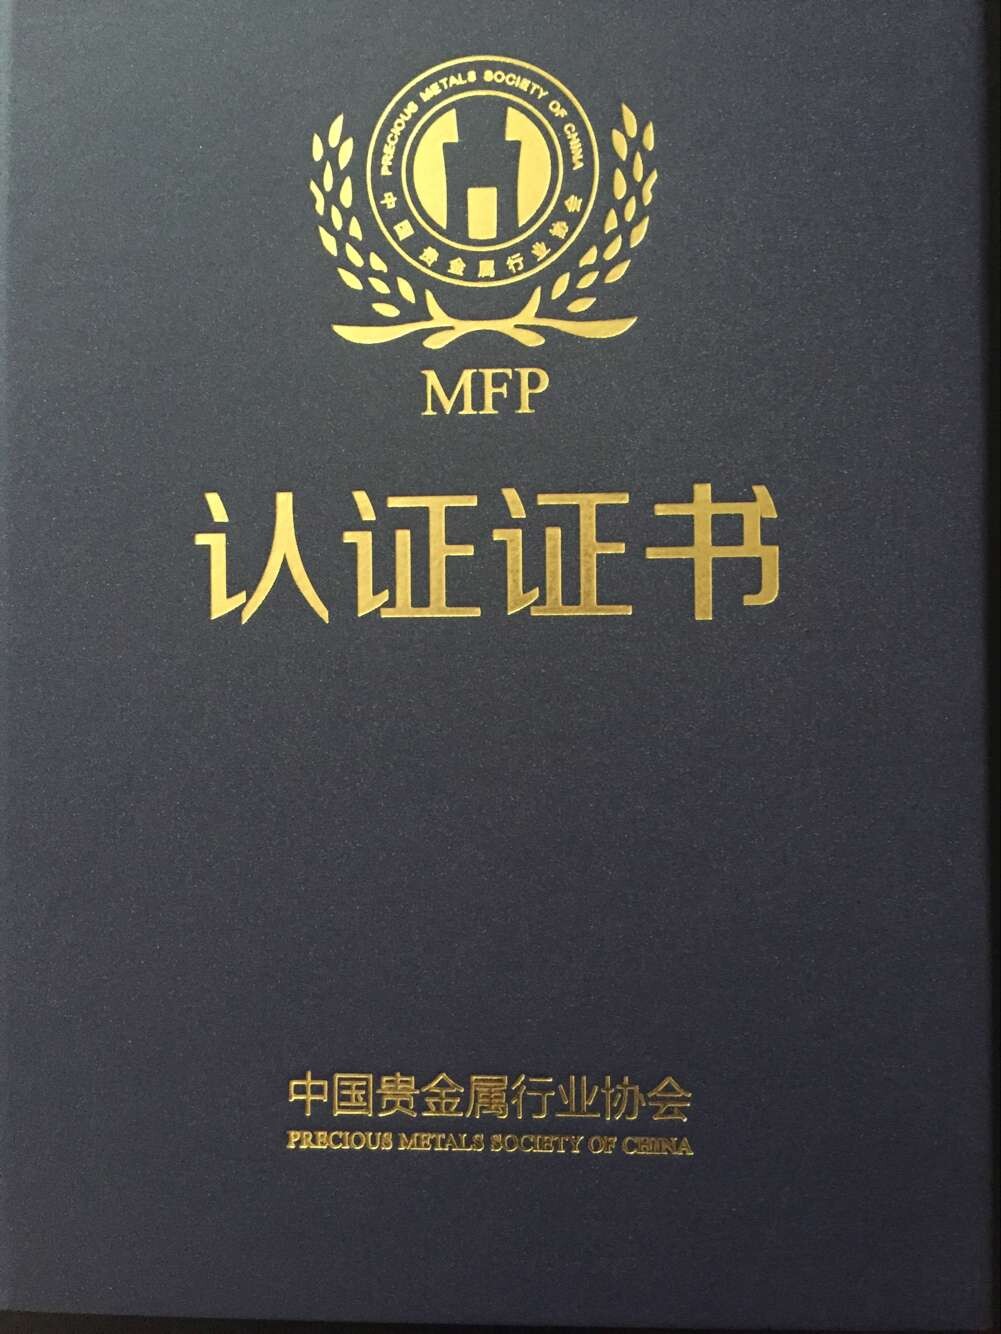 MFP(中國貴金屬行業協會分析師認證)